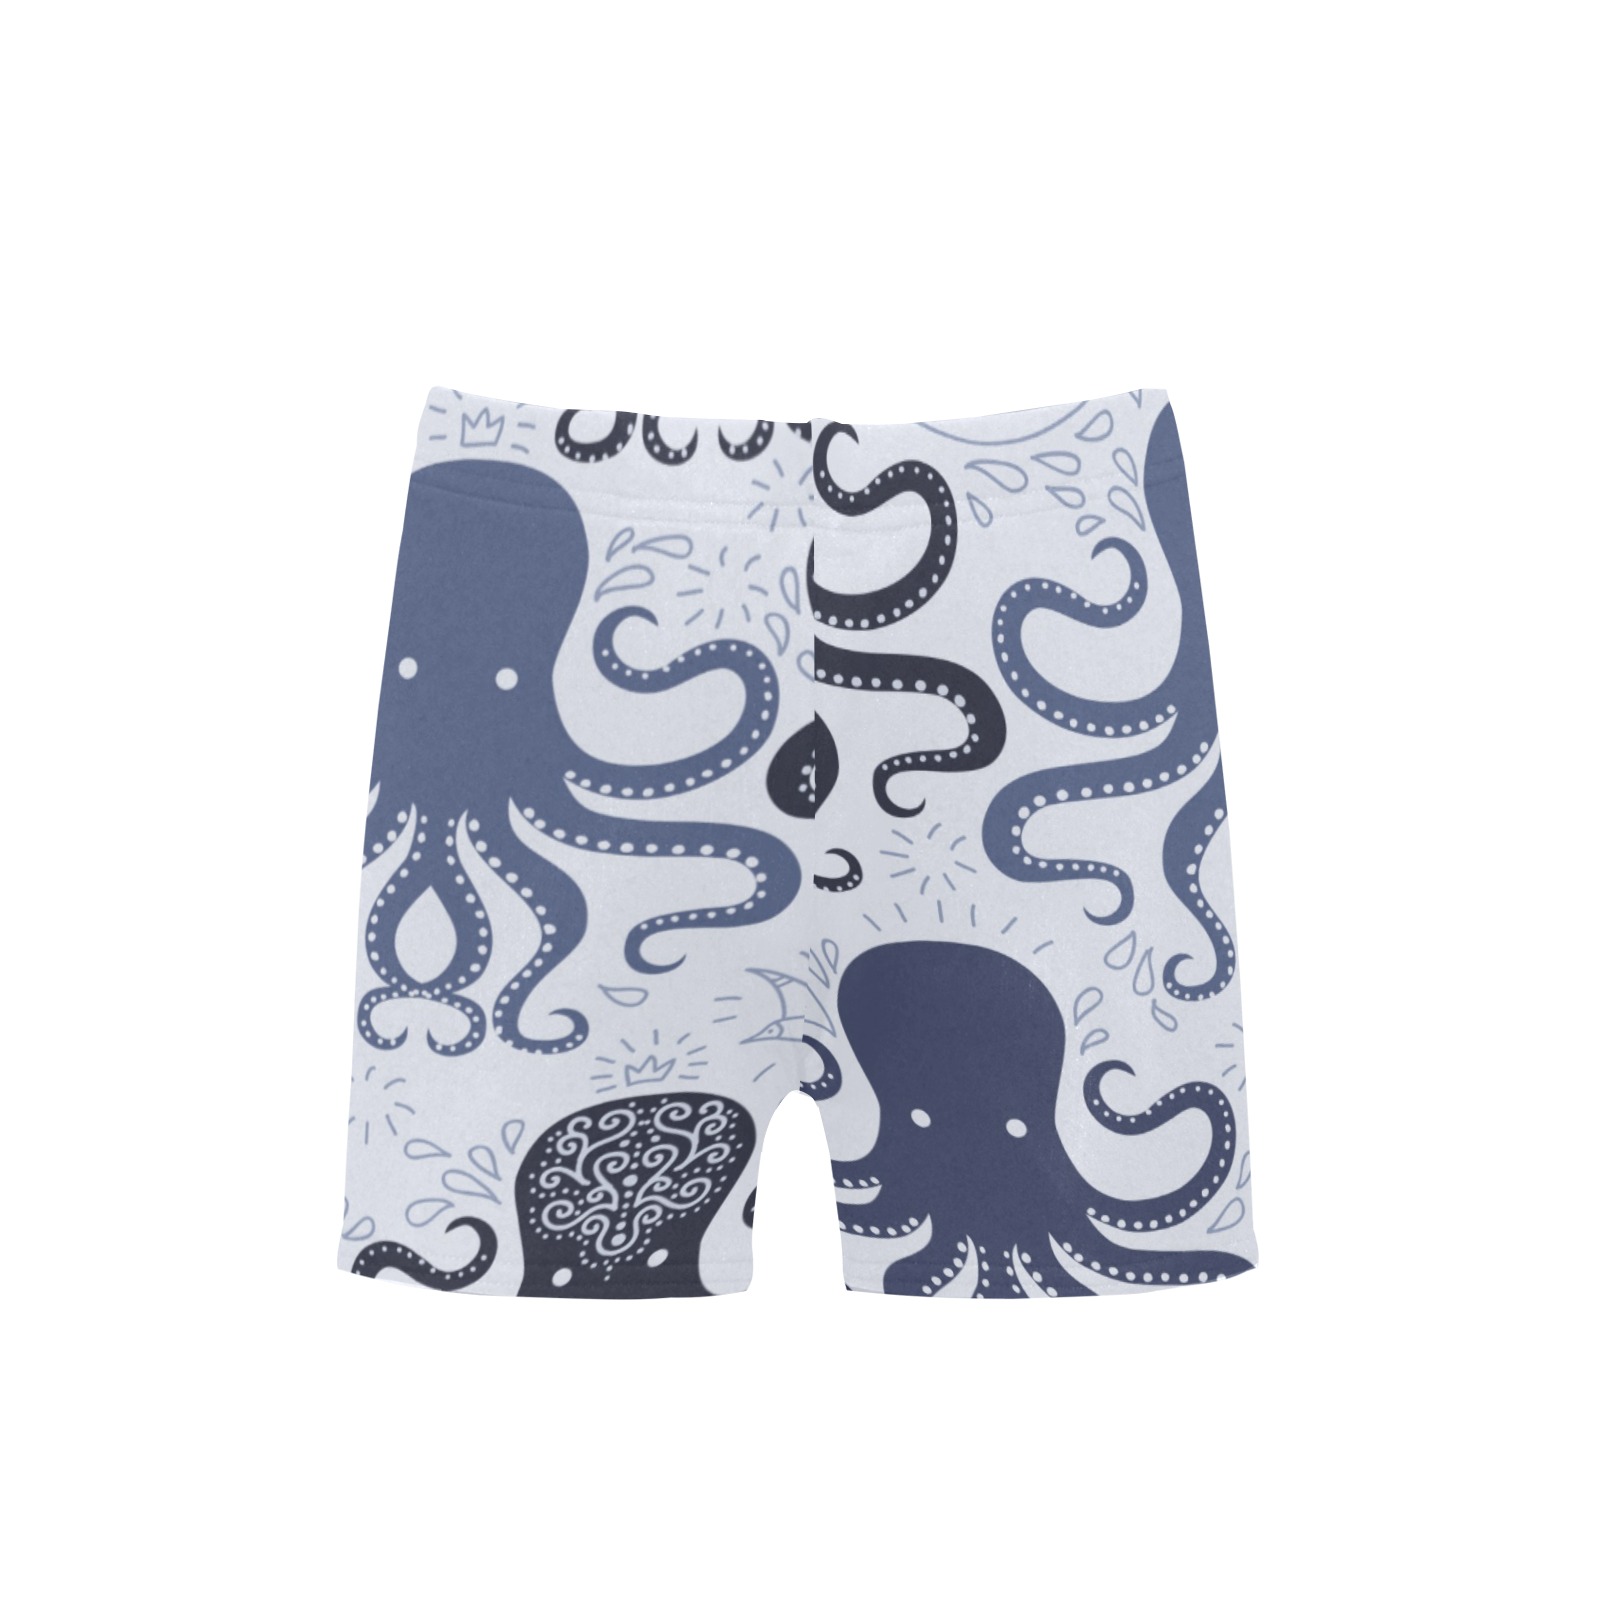 Octopus Little Boys' Swimming Trunks (Model L57)